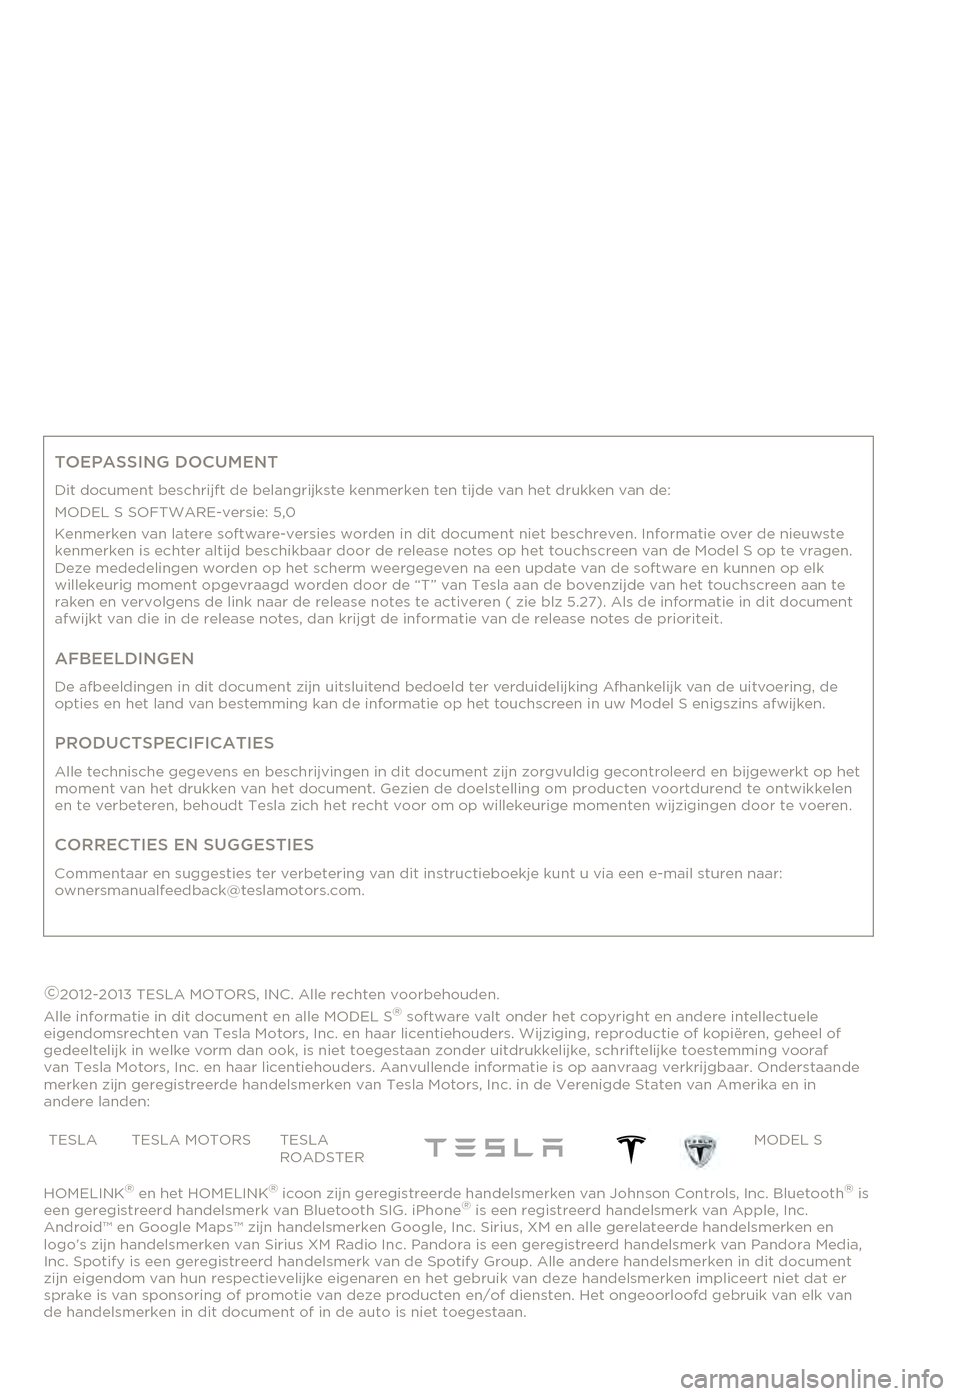 TESLA MODEL S 2015  Handleiding (in Dutch) TOEPASSING DOCUMENT
Dit document beschrijft de belangrijkste kenmerken ten tijde van het drukken van de:MODEL S SOFTWARE-versie: 5,0Kenmerken van latere software-versies worden in dit document niet be